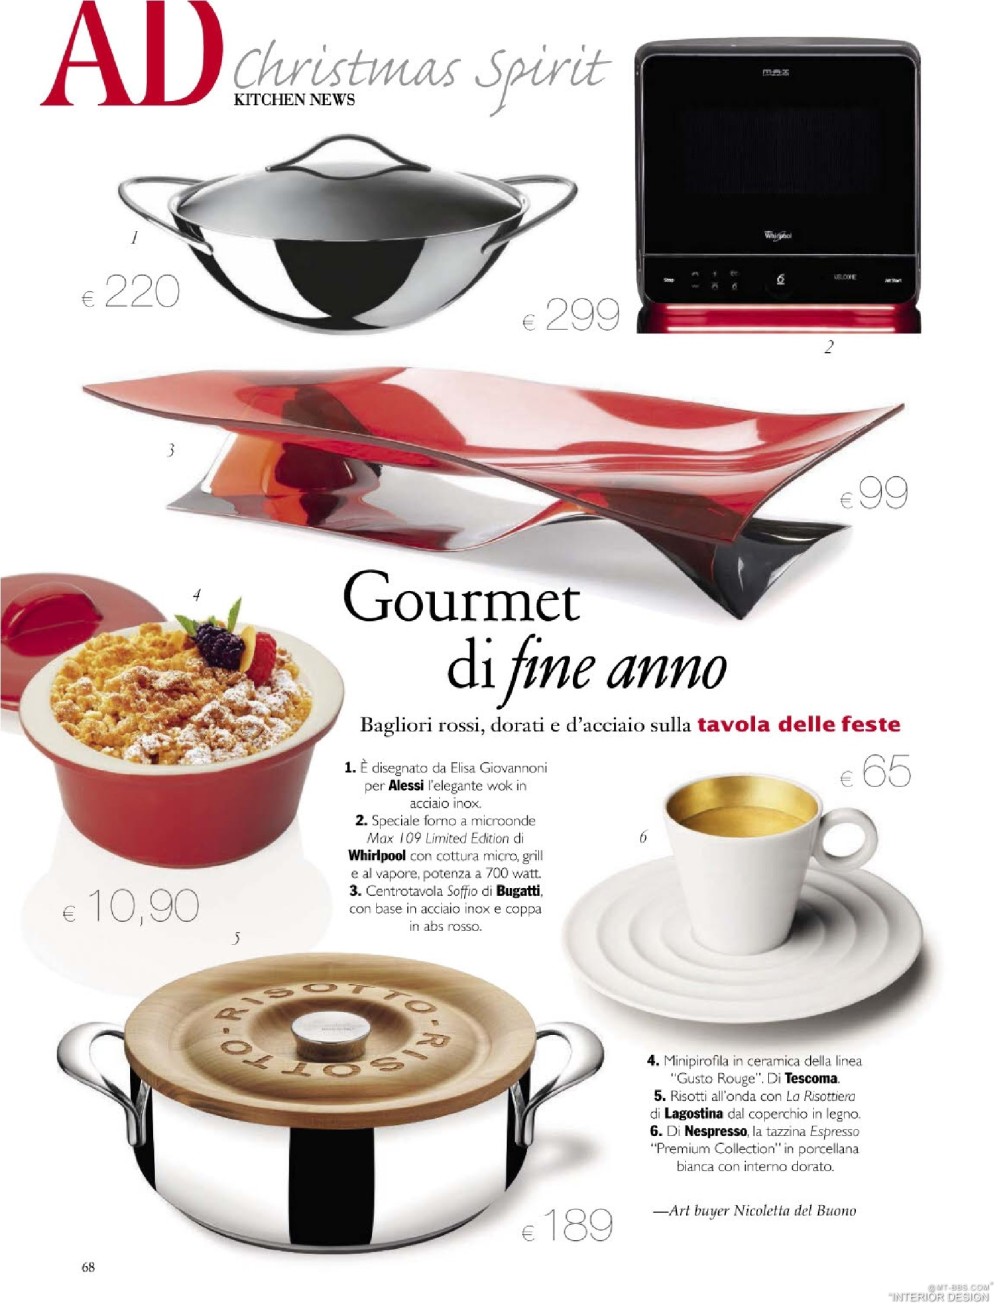 意大利AD 杂志 2012年全年JPG高清版本 全免（上传完毕）_0070.jpg